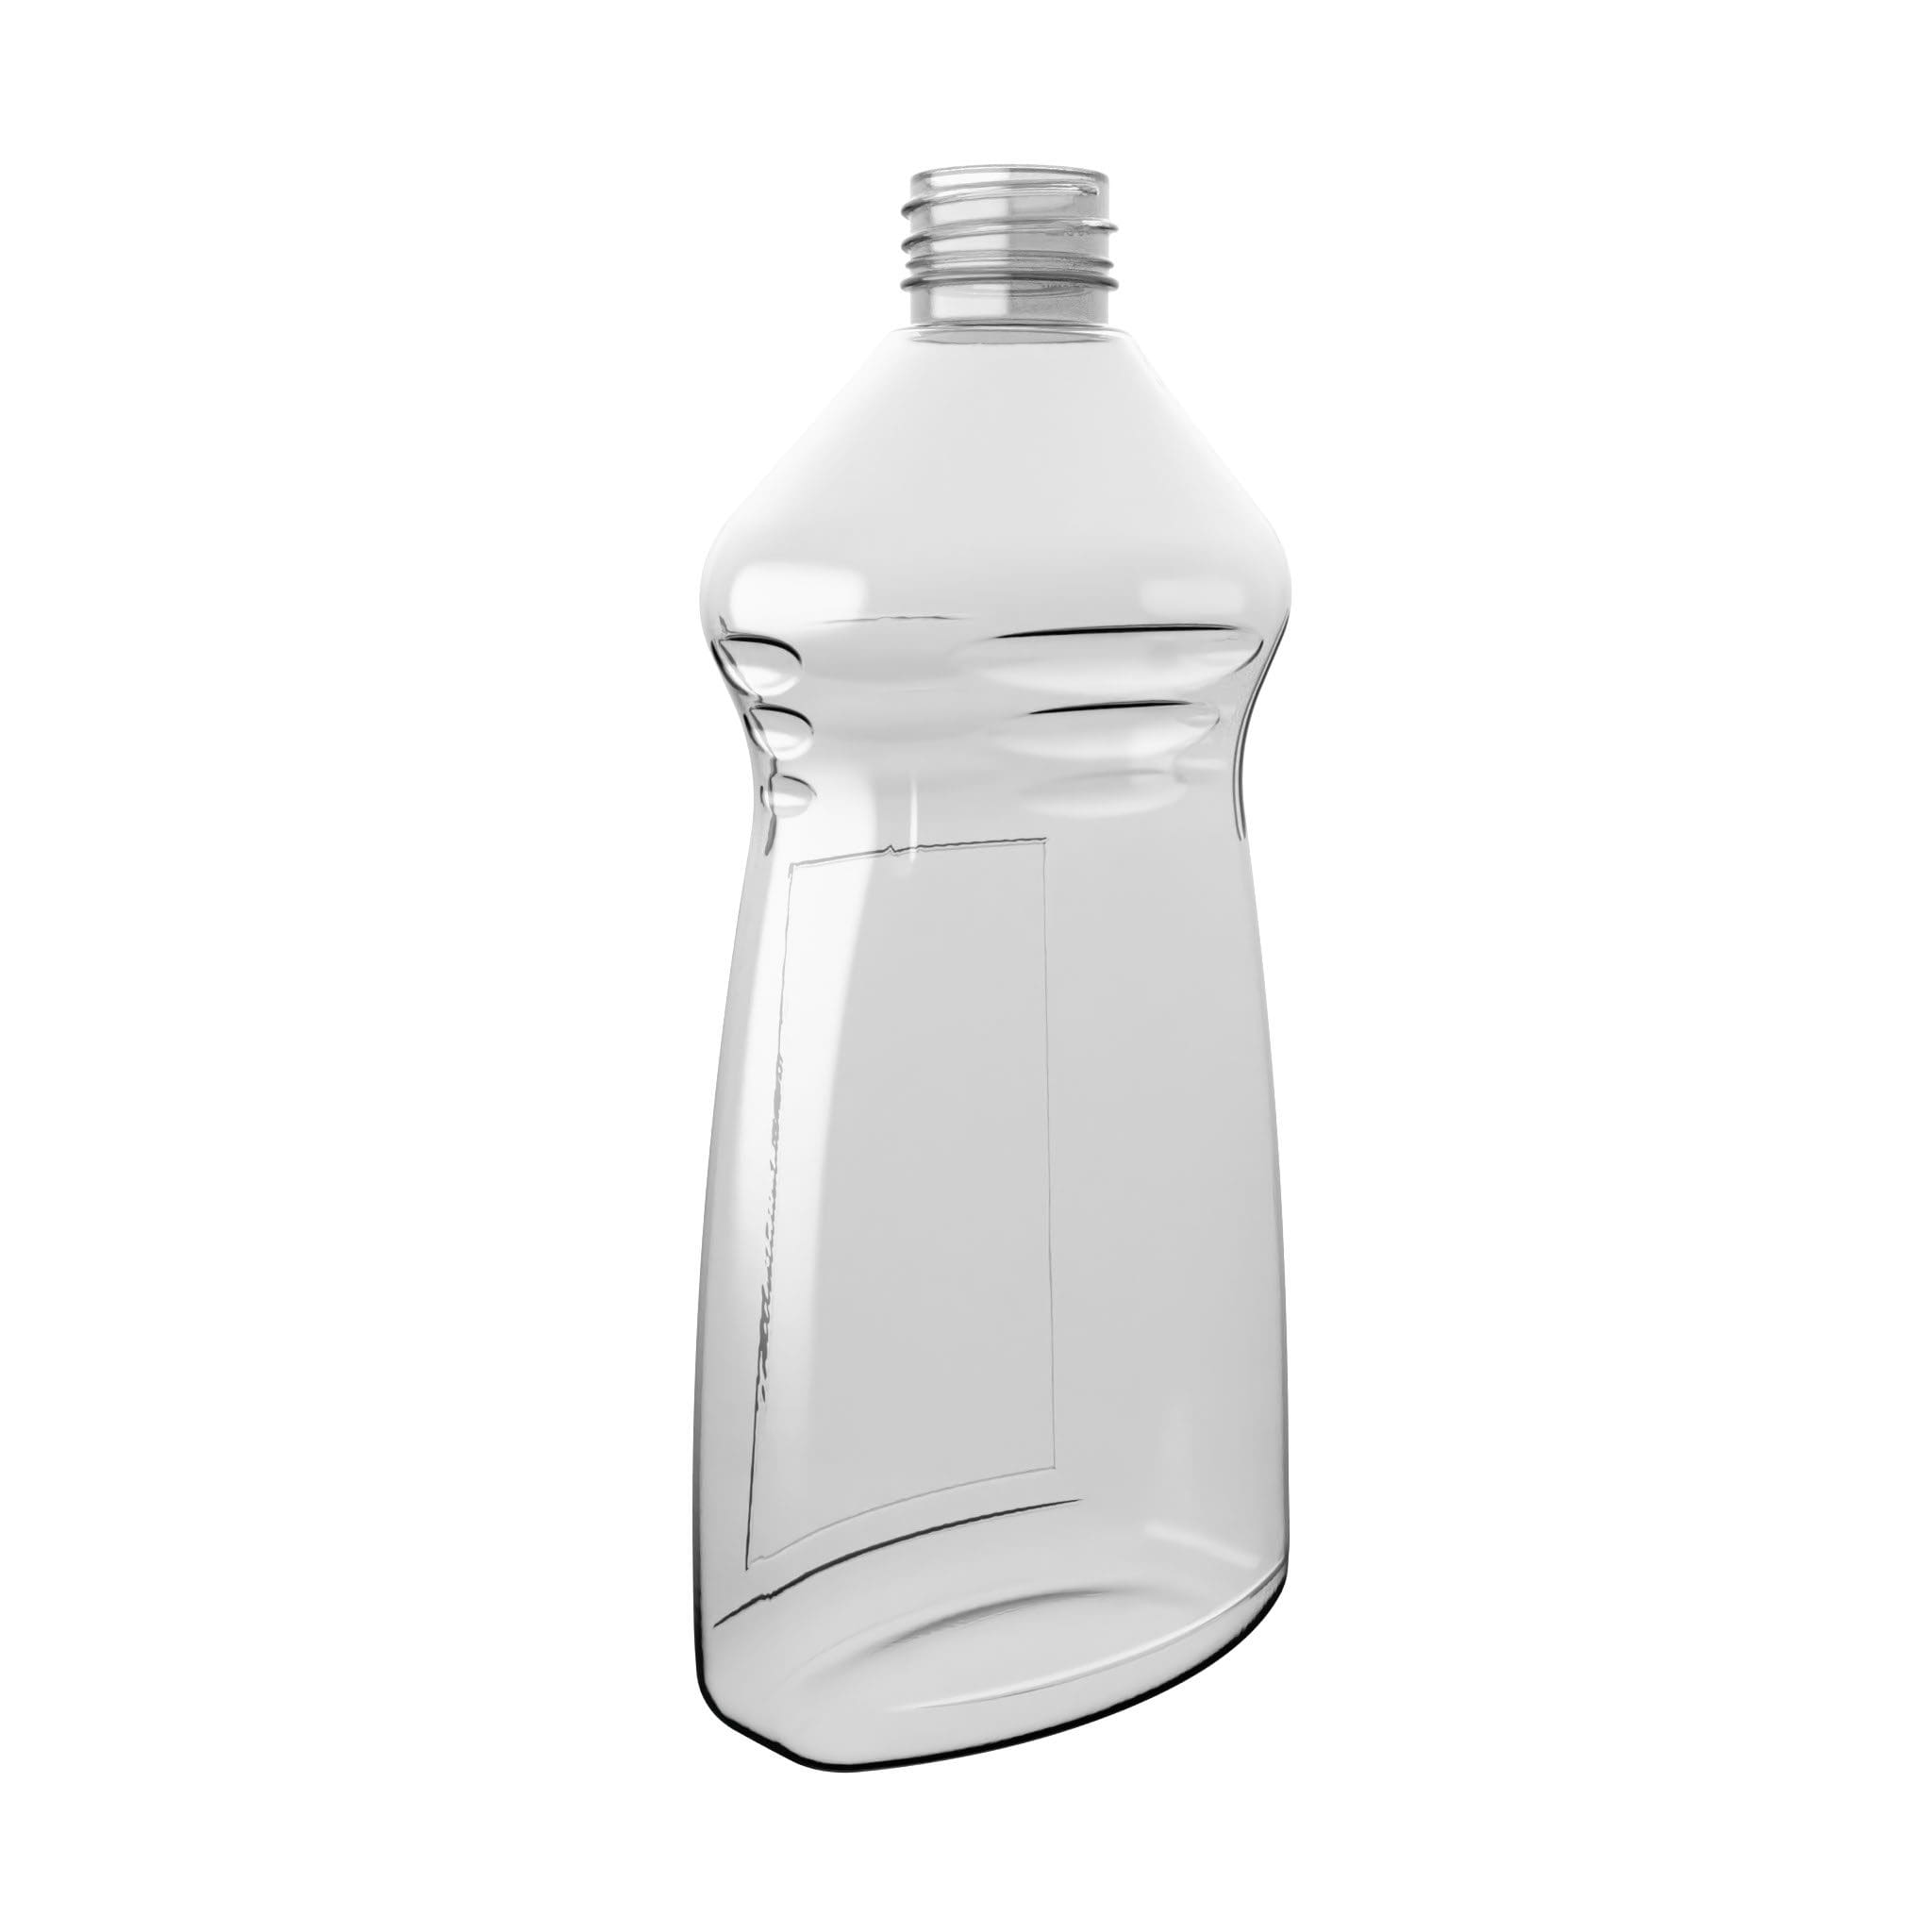 EPOCLEAN PET-Flasche in ovaler Form von EPROPLAST.